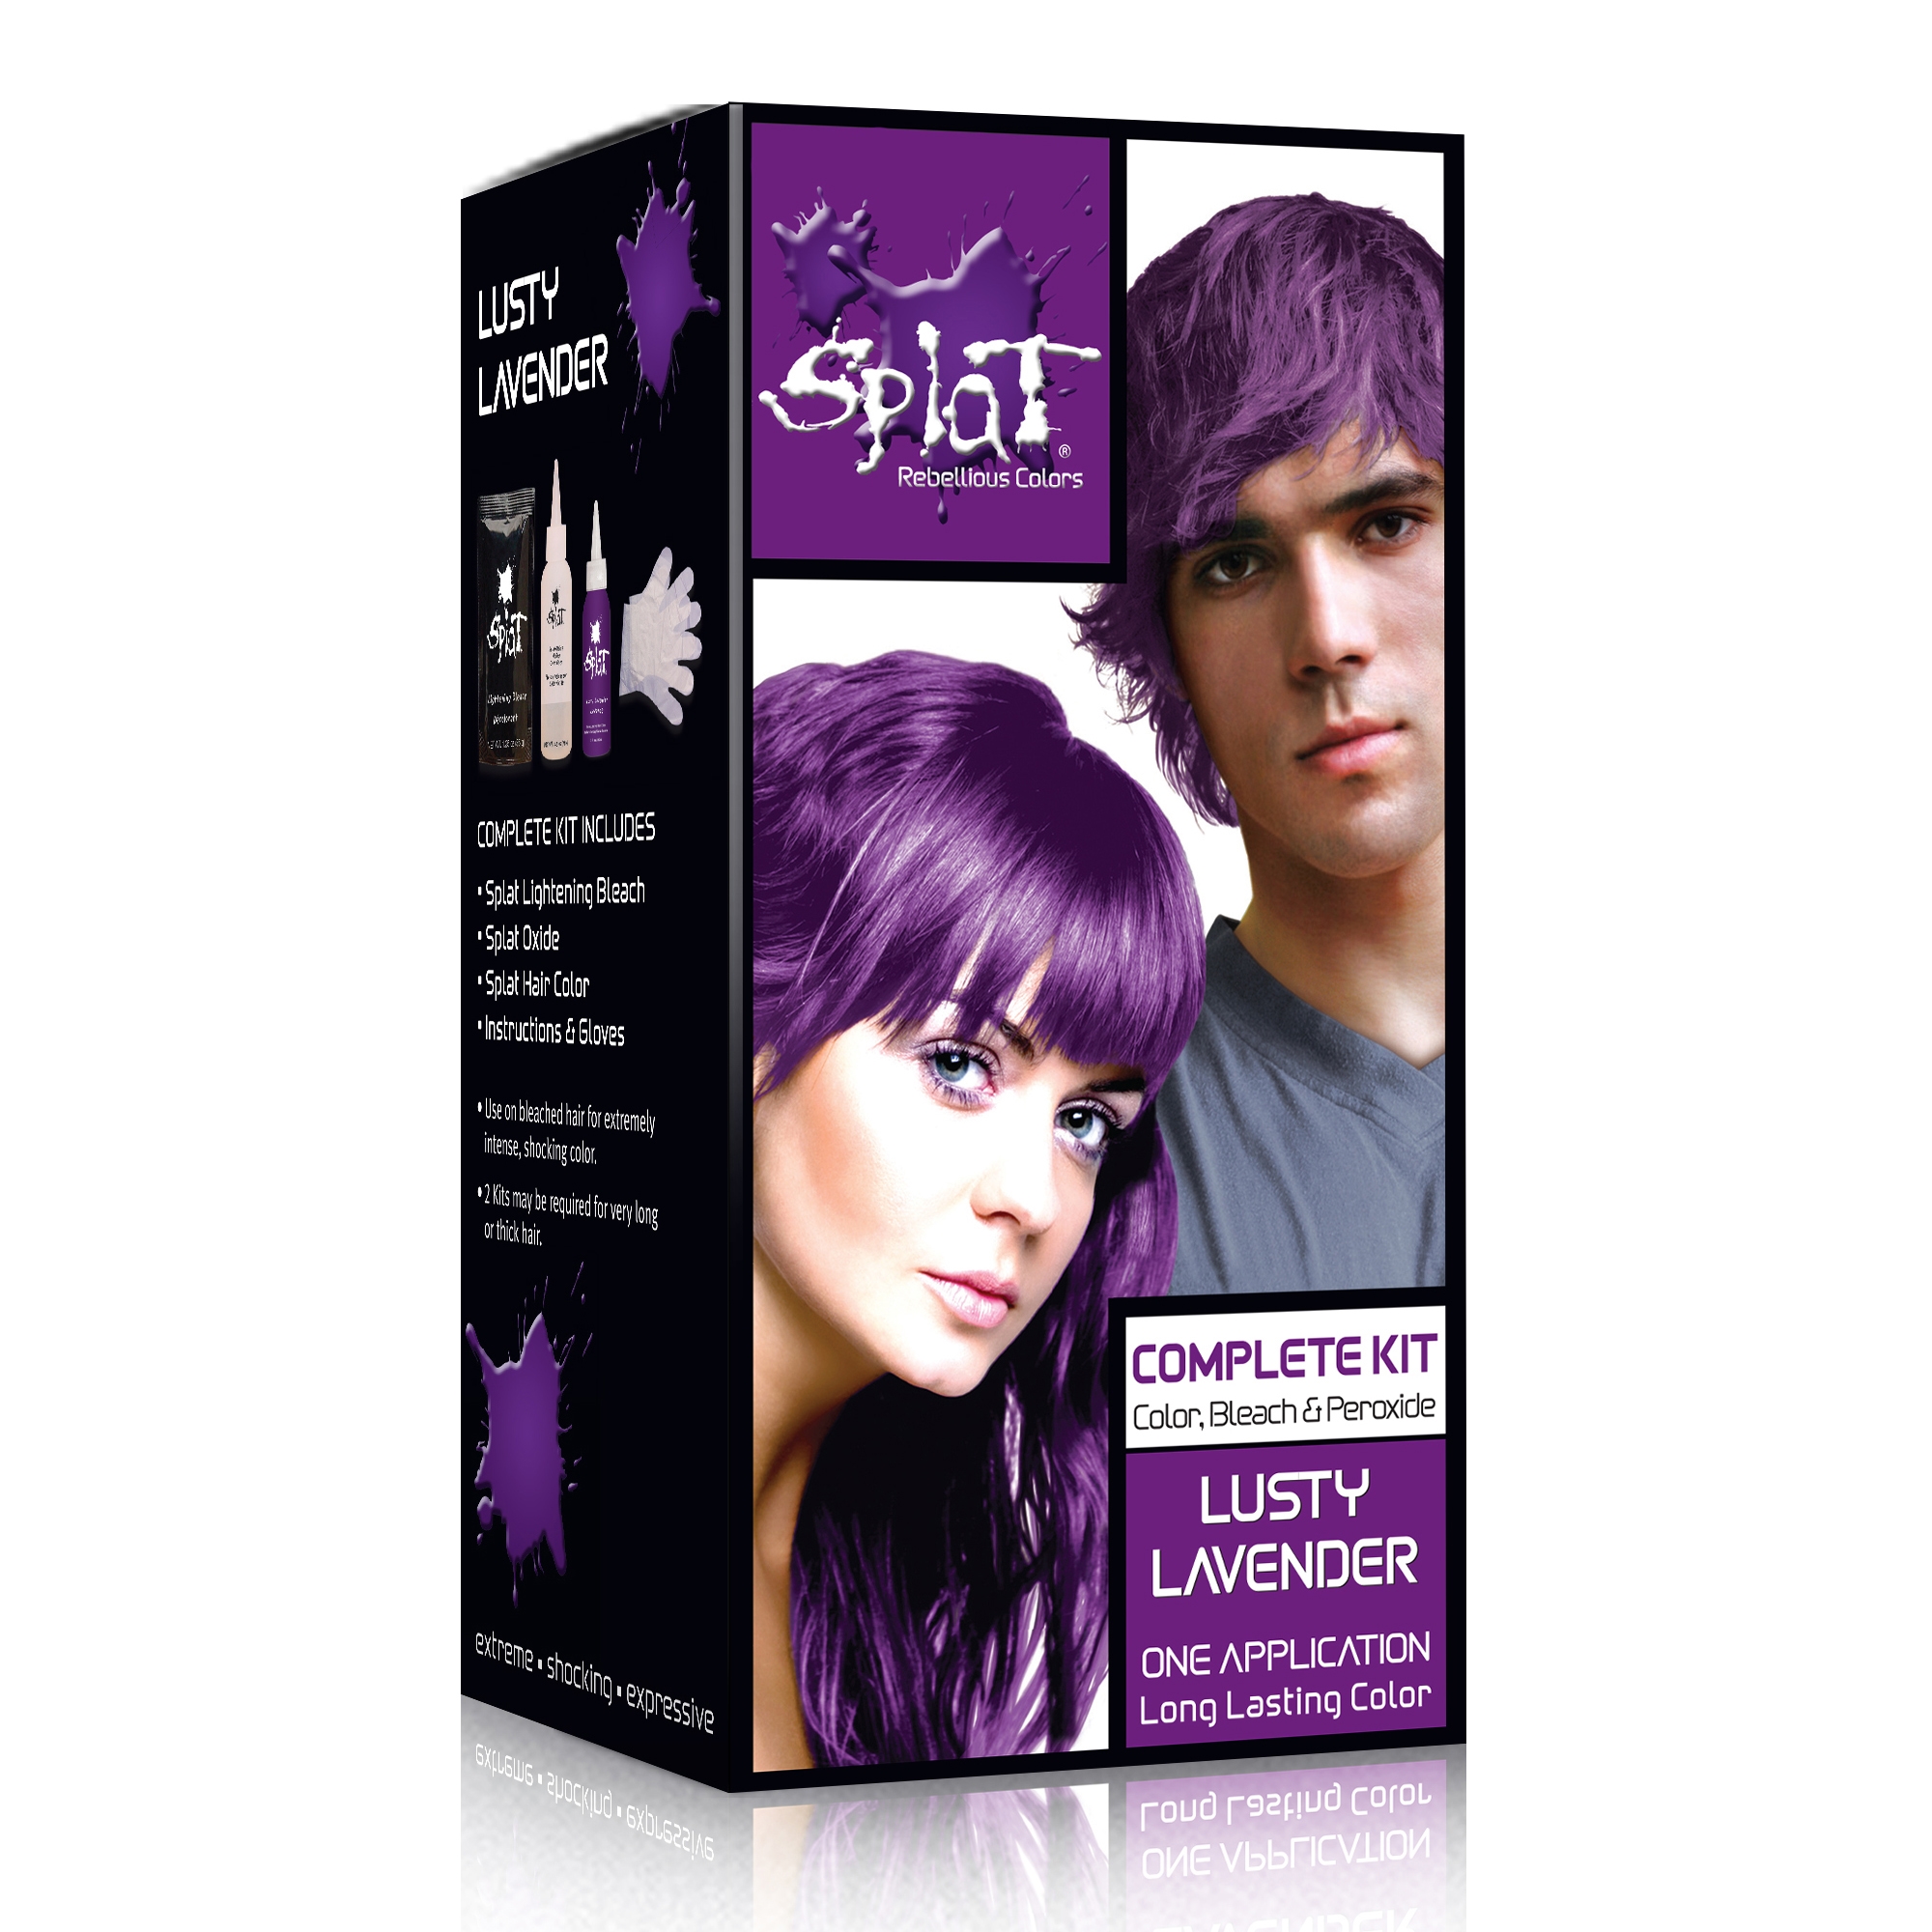 Фиолетовый аметист краска для волос